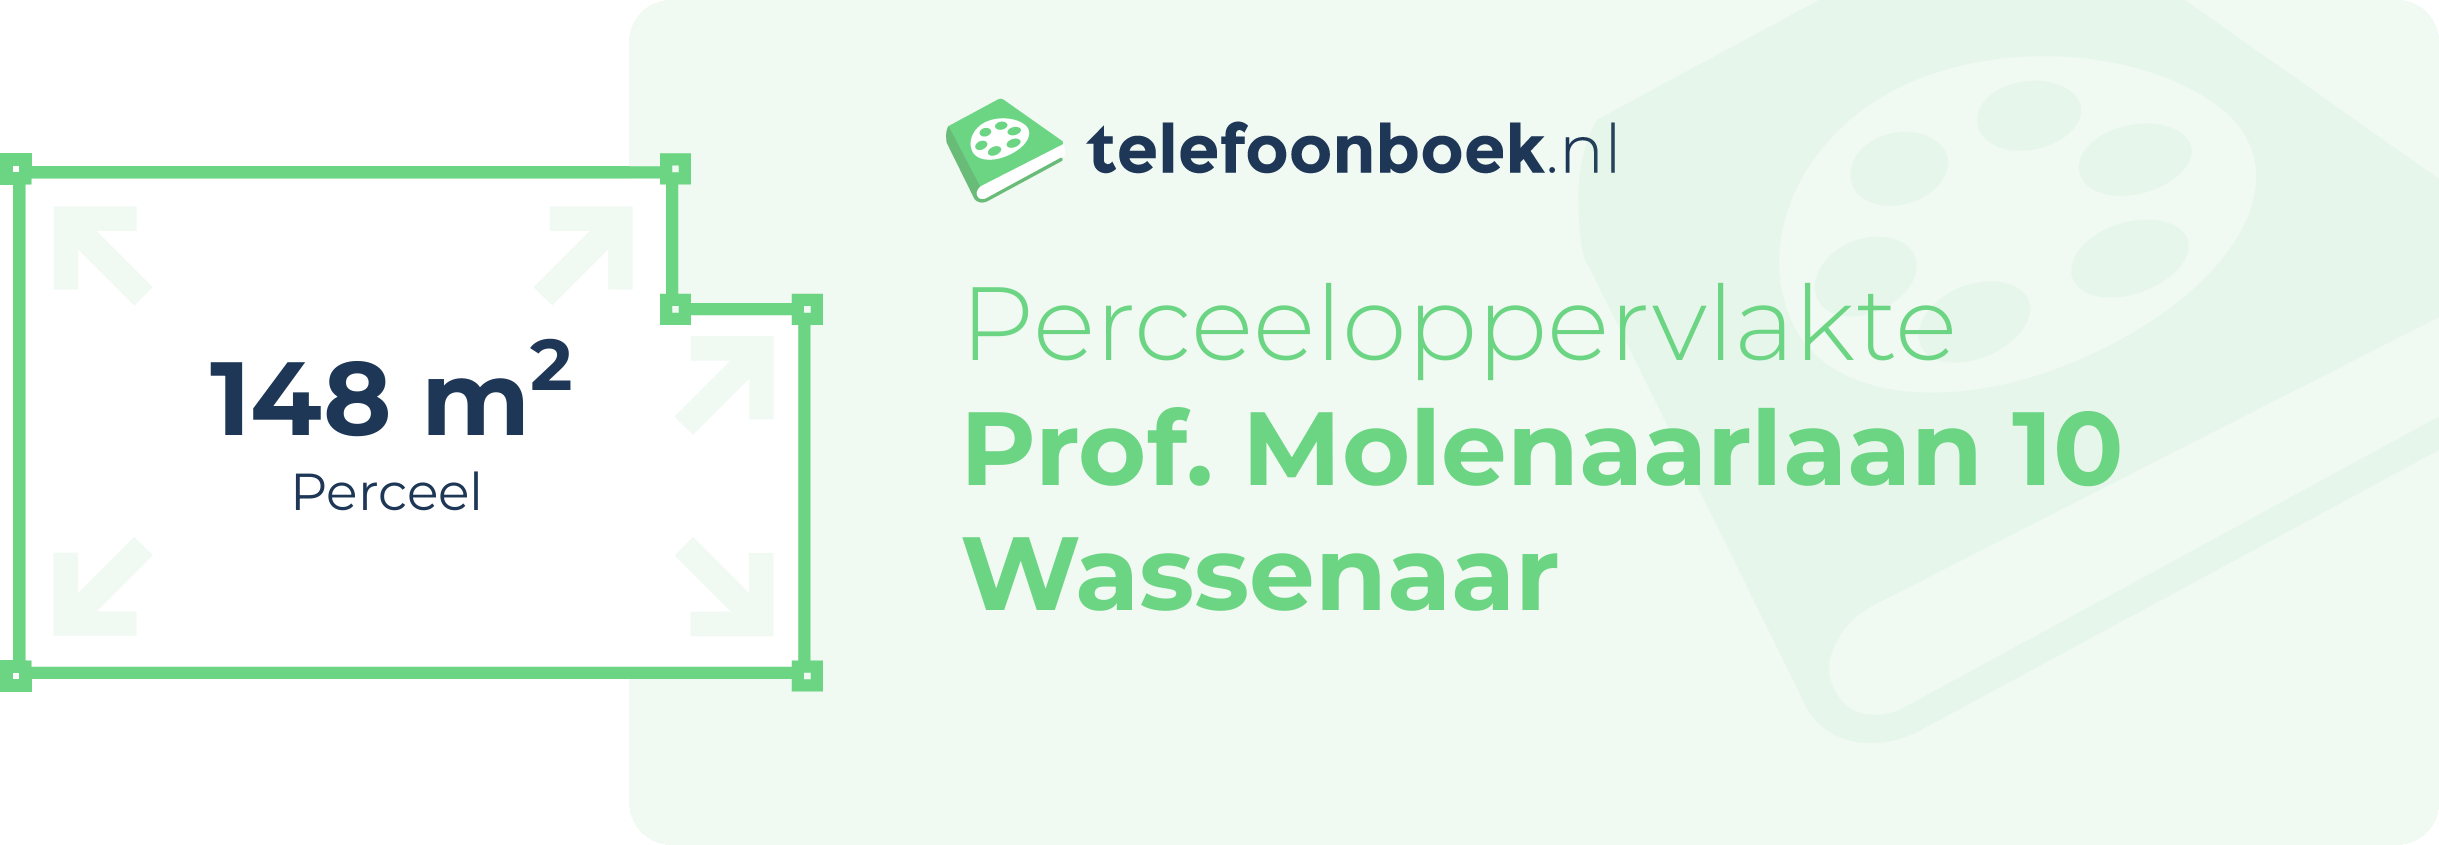 Perceeloppervlakte Prof. Molenaarlaan 10 Wassenaar